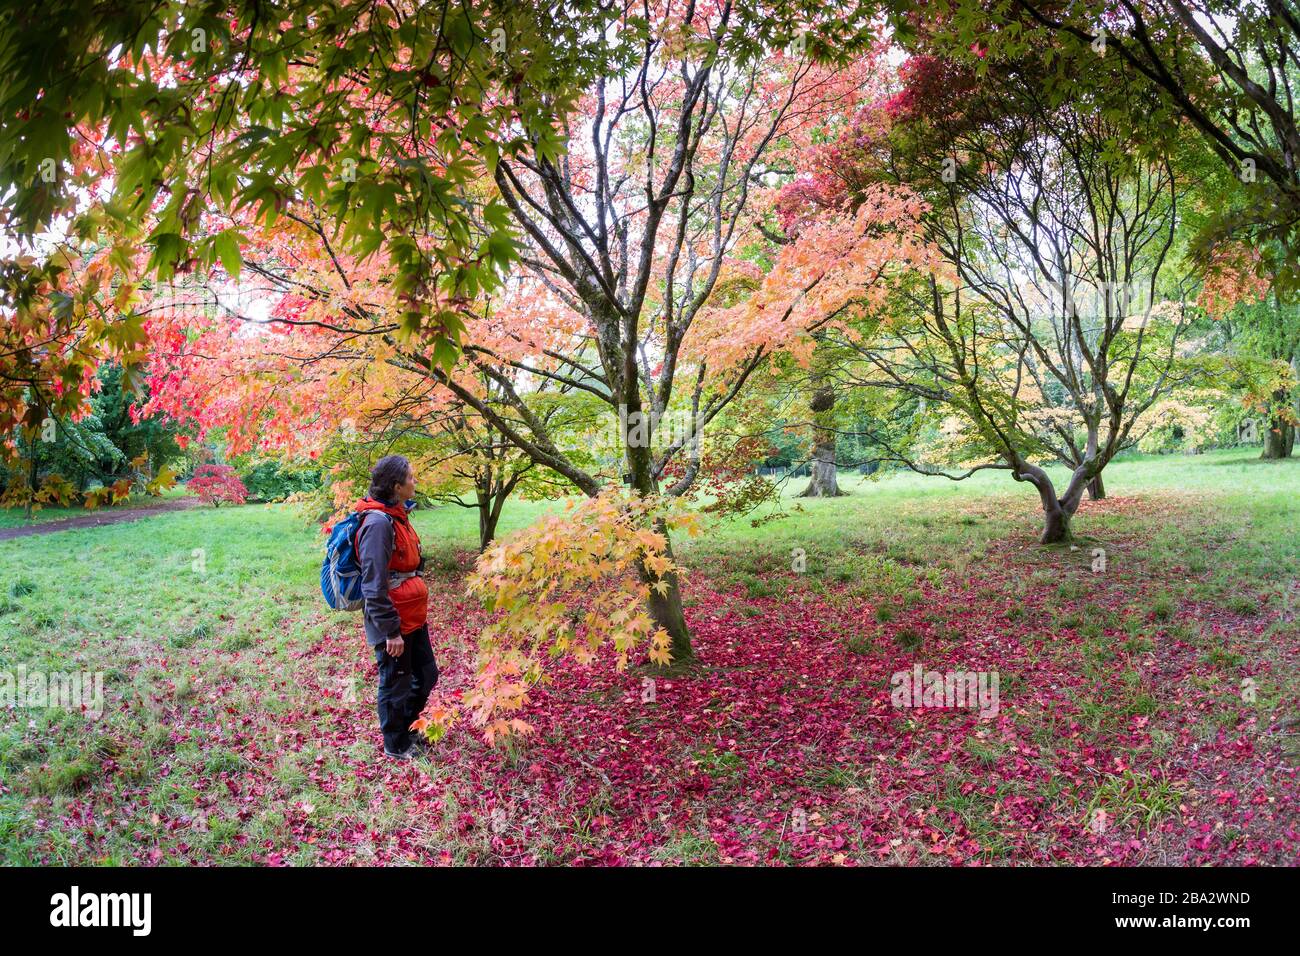 Les feuilles Acer sont tombées sur le sol et la personne qui regarde les arbres, l'Arboretum de Westonbirt, le Gloucestershire, l'Enhland, Royaume-Uni Banque D'Images